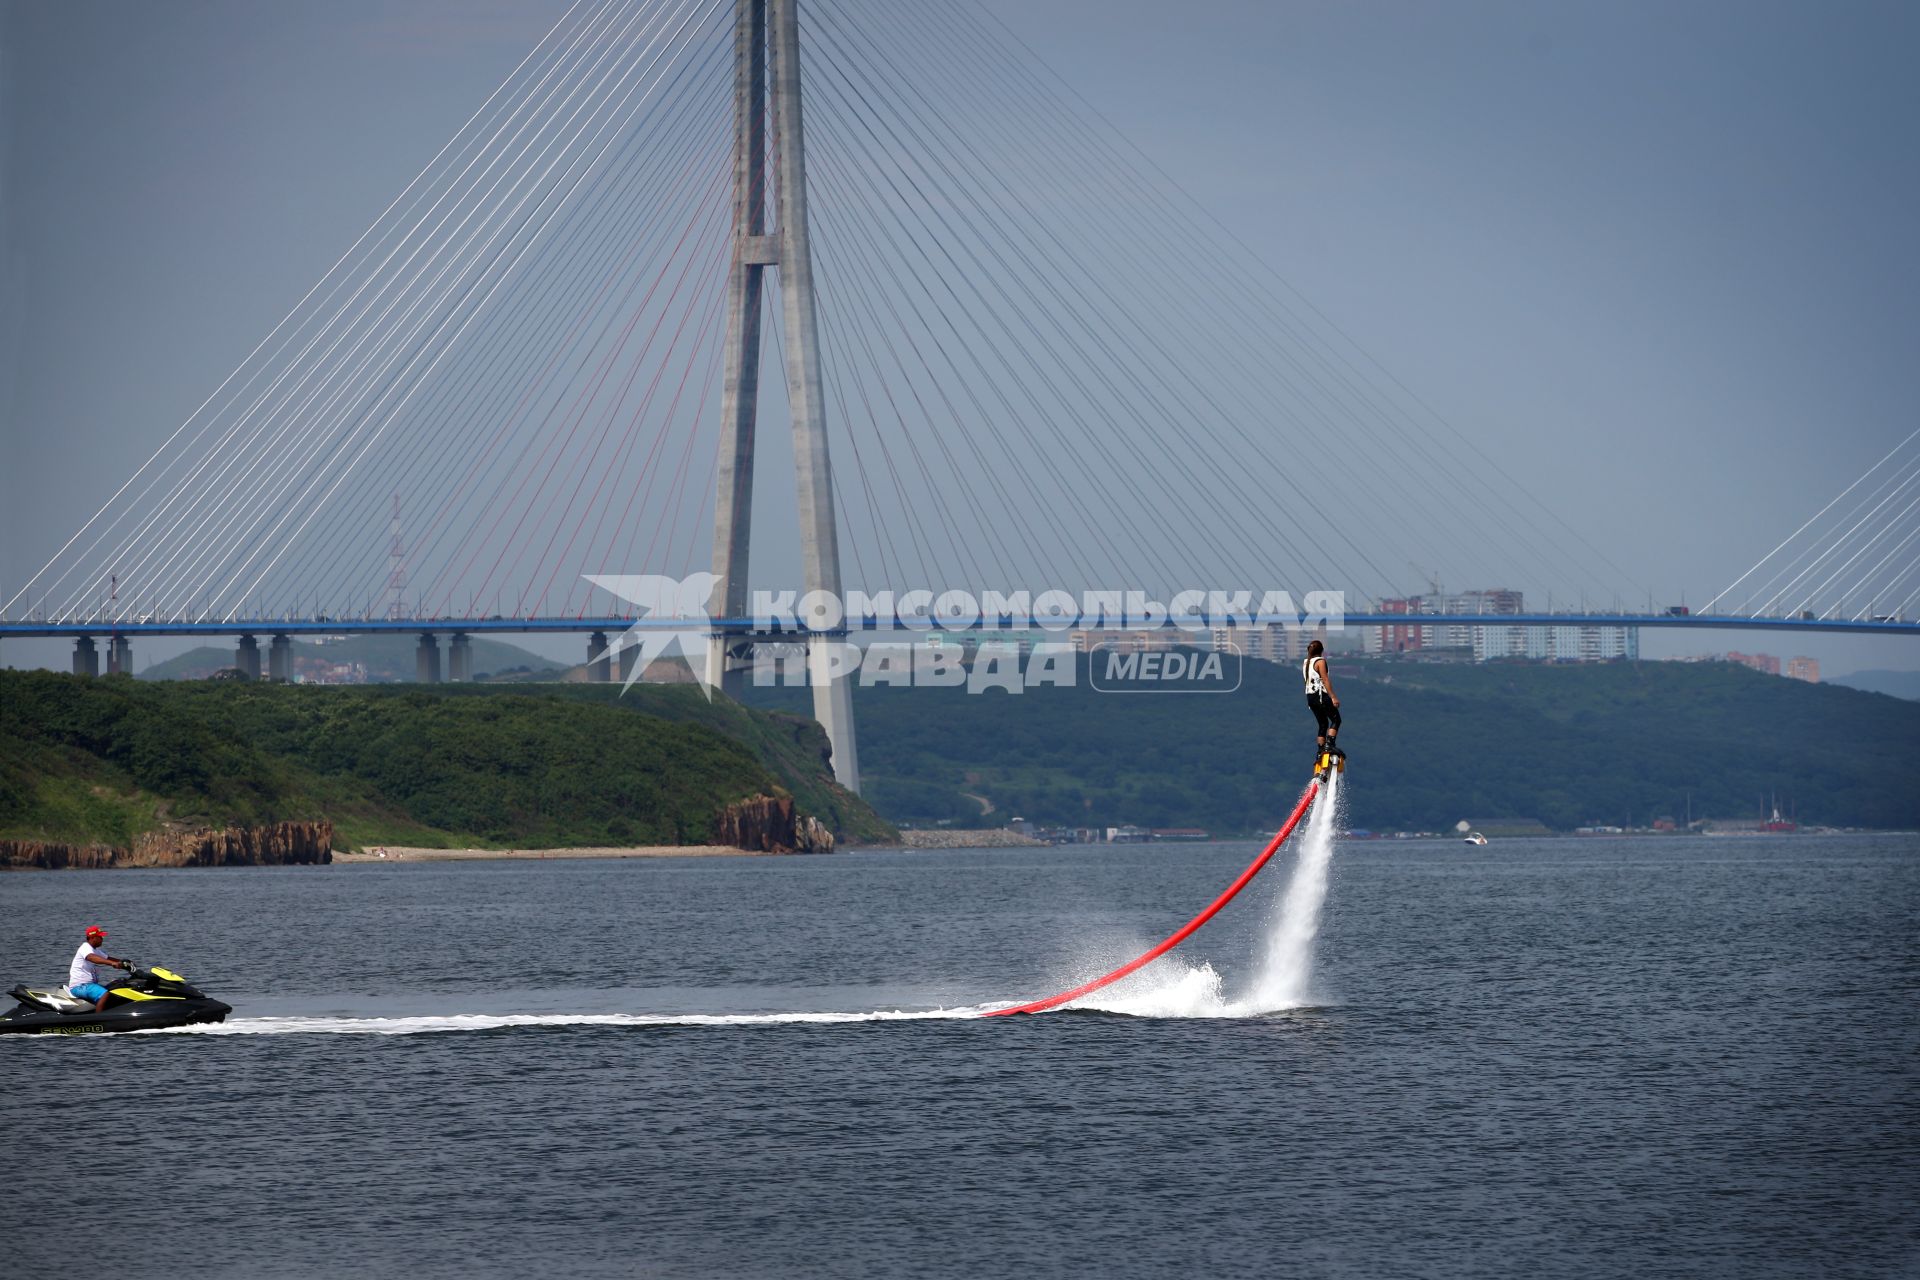 Русский мост — вантовый мост во Владивостоке, соединяющий полуостров Назимова с мысом Новосильского на острове Русском.